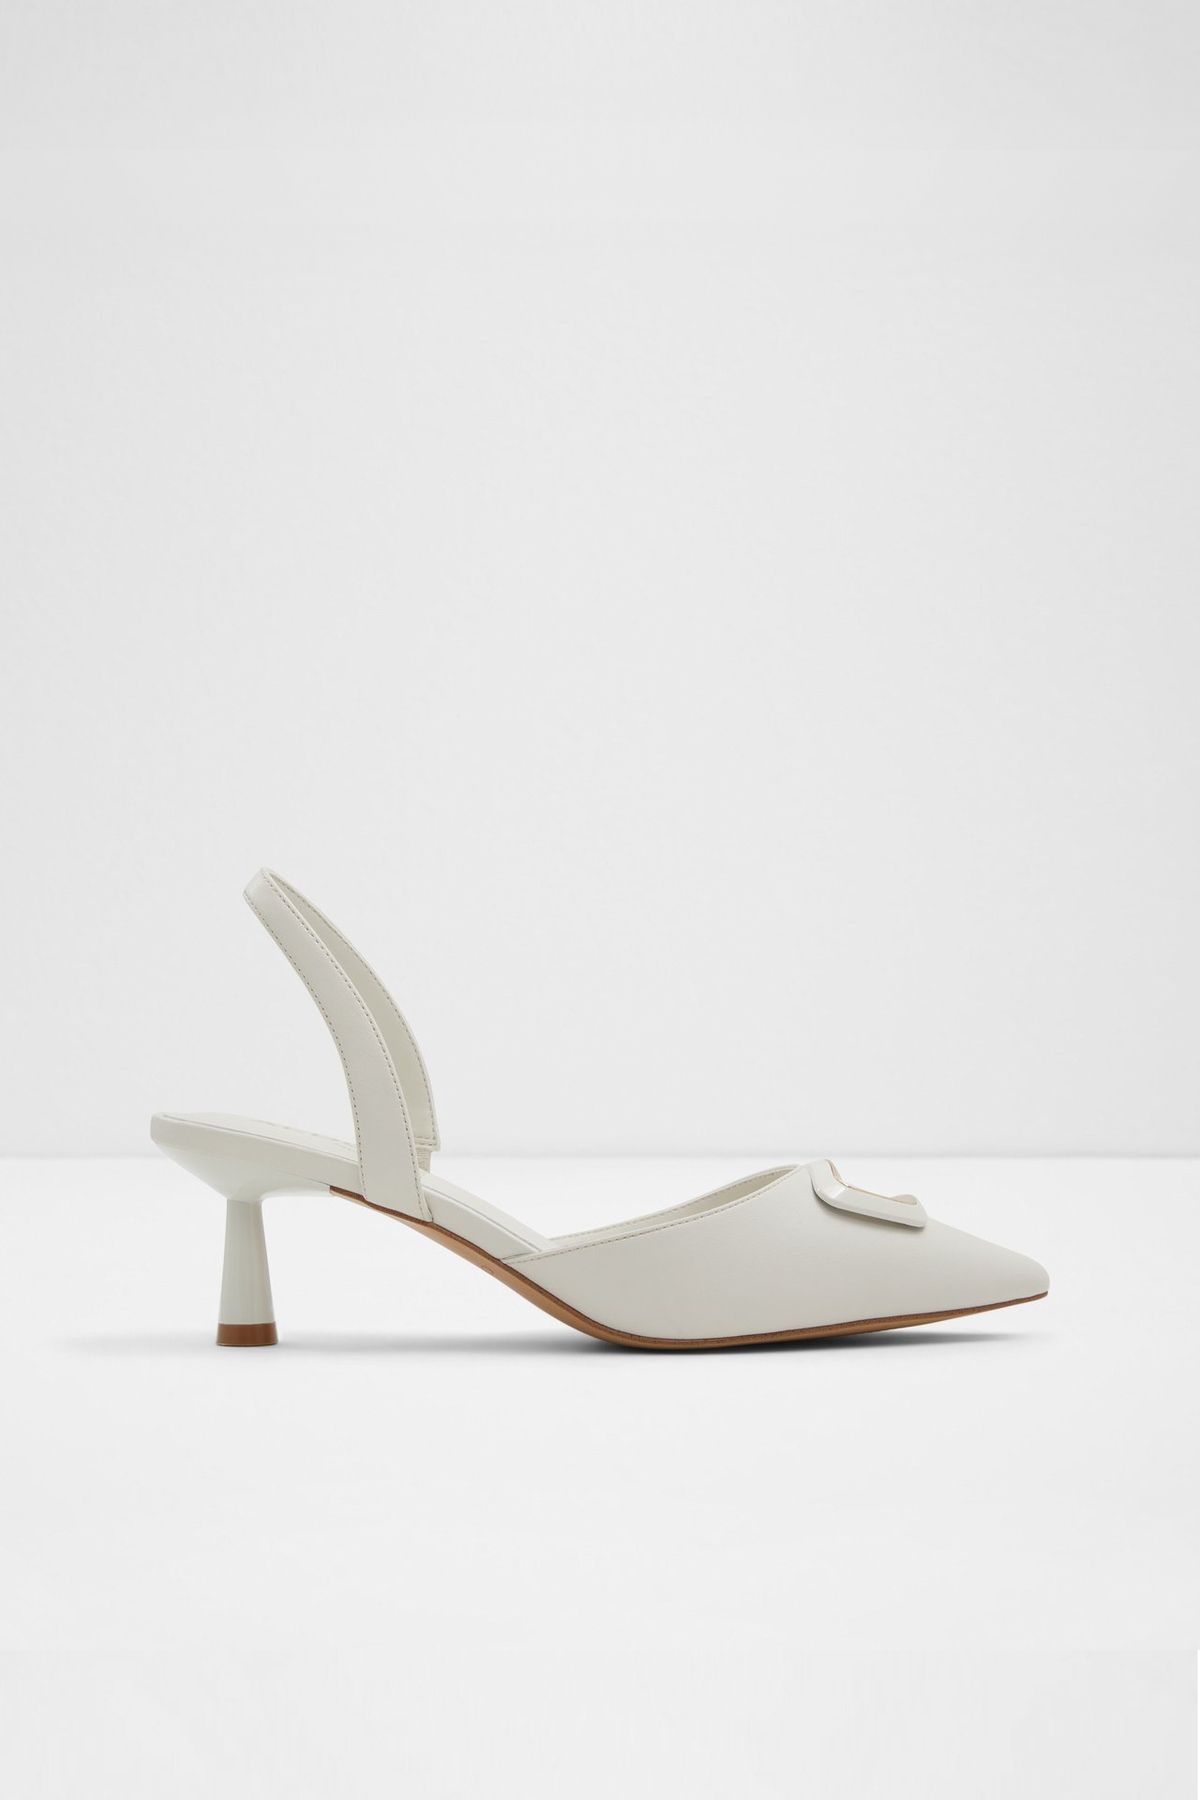 Aldo GIOCANTE - Beyaz Kadın Topuklu Ayakkabı